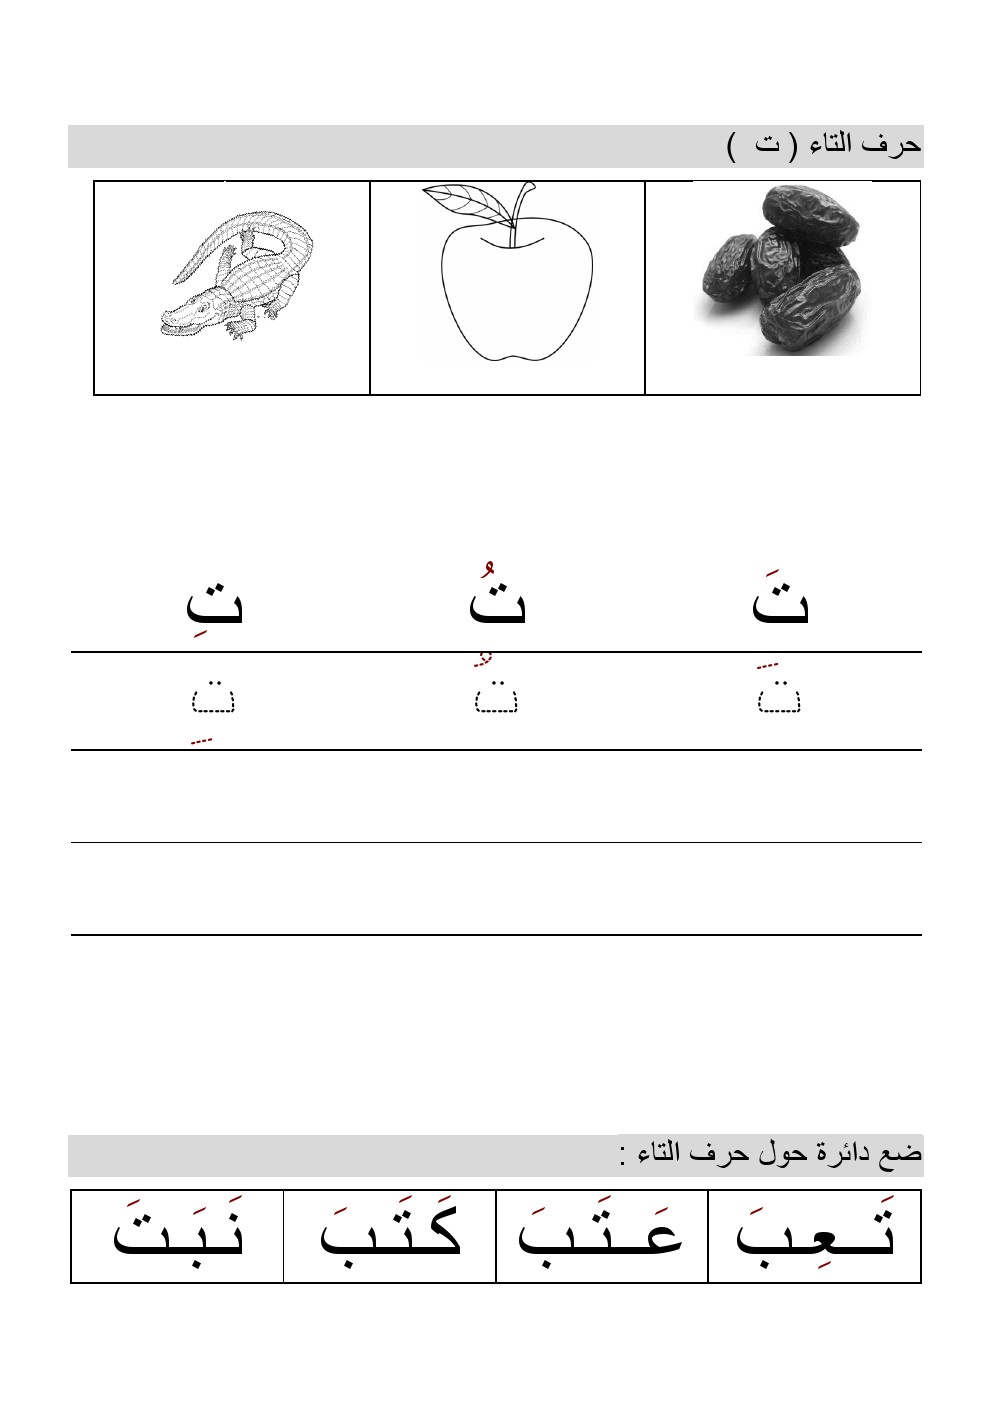 أوراق عمل لتعلم الحروف الهجائية(الألف والباء والتاء), الصف الأول, لغة  عربية, الفصل الثاني - ملفات الكويت التعليمية